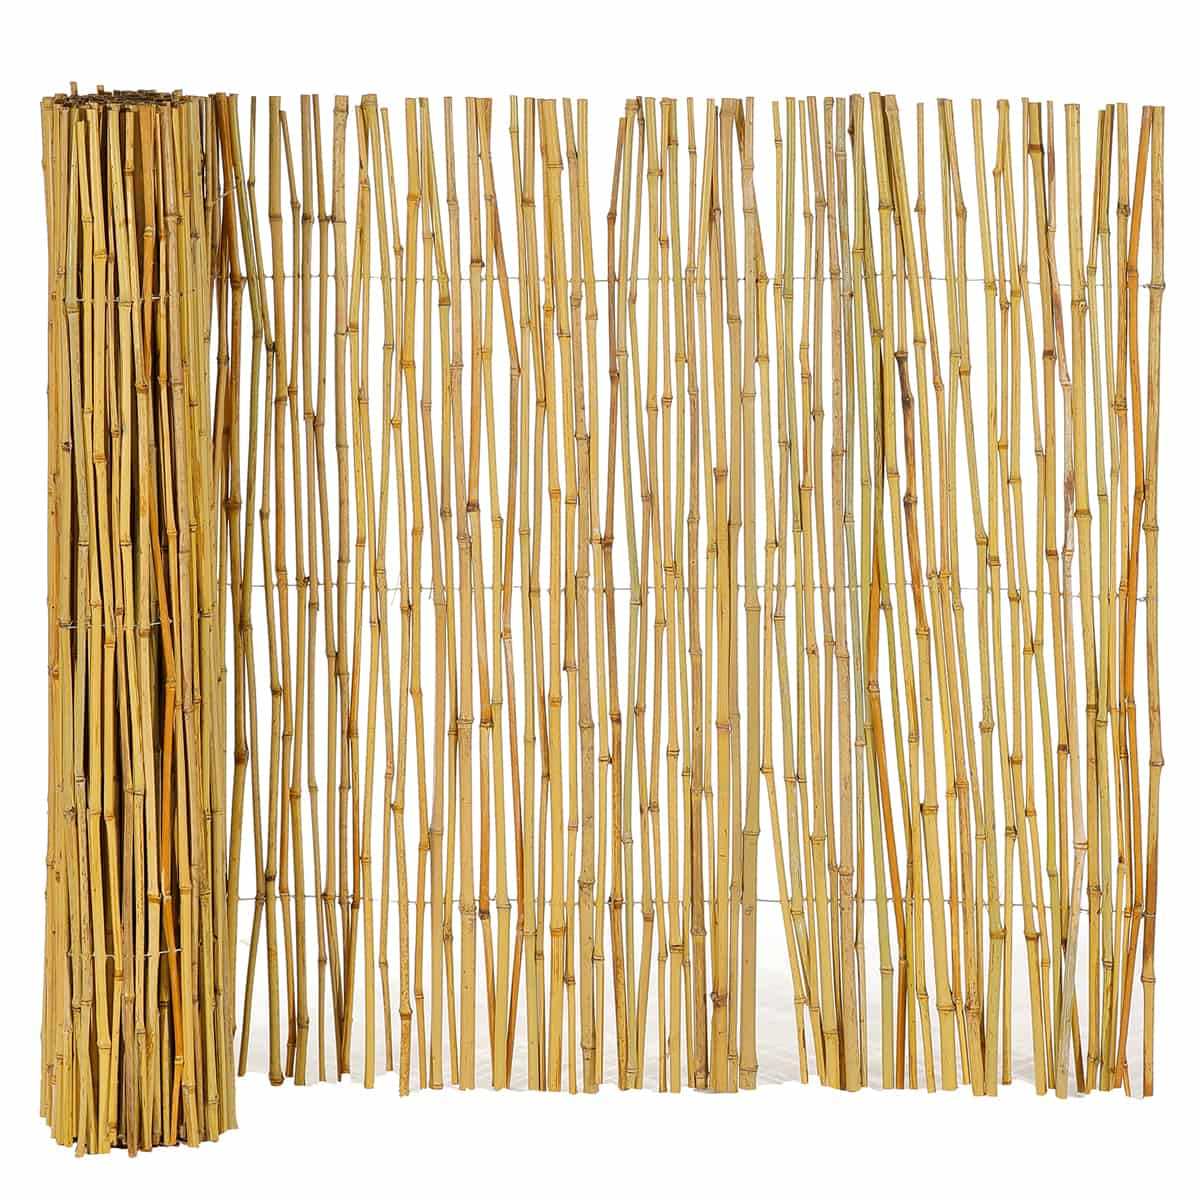 Canisse de bambou fendu 3m, vente au meilleur prix